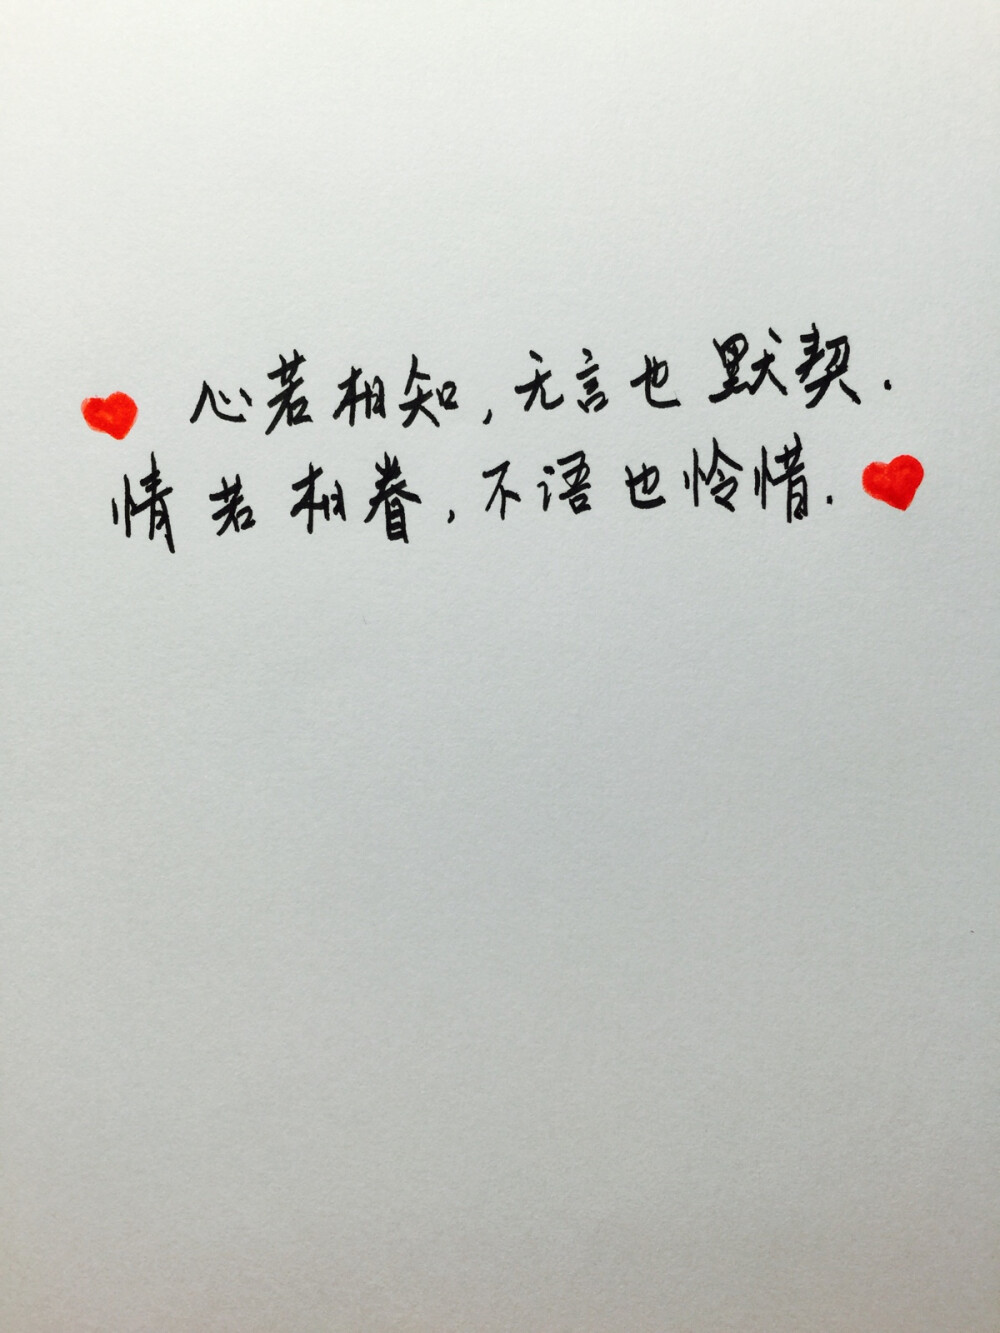 手写爱情#苹果6高清壁纸,iphone 6 plus高清壁纸,告白,爱情,励志